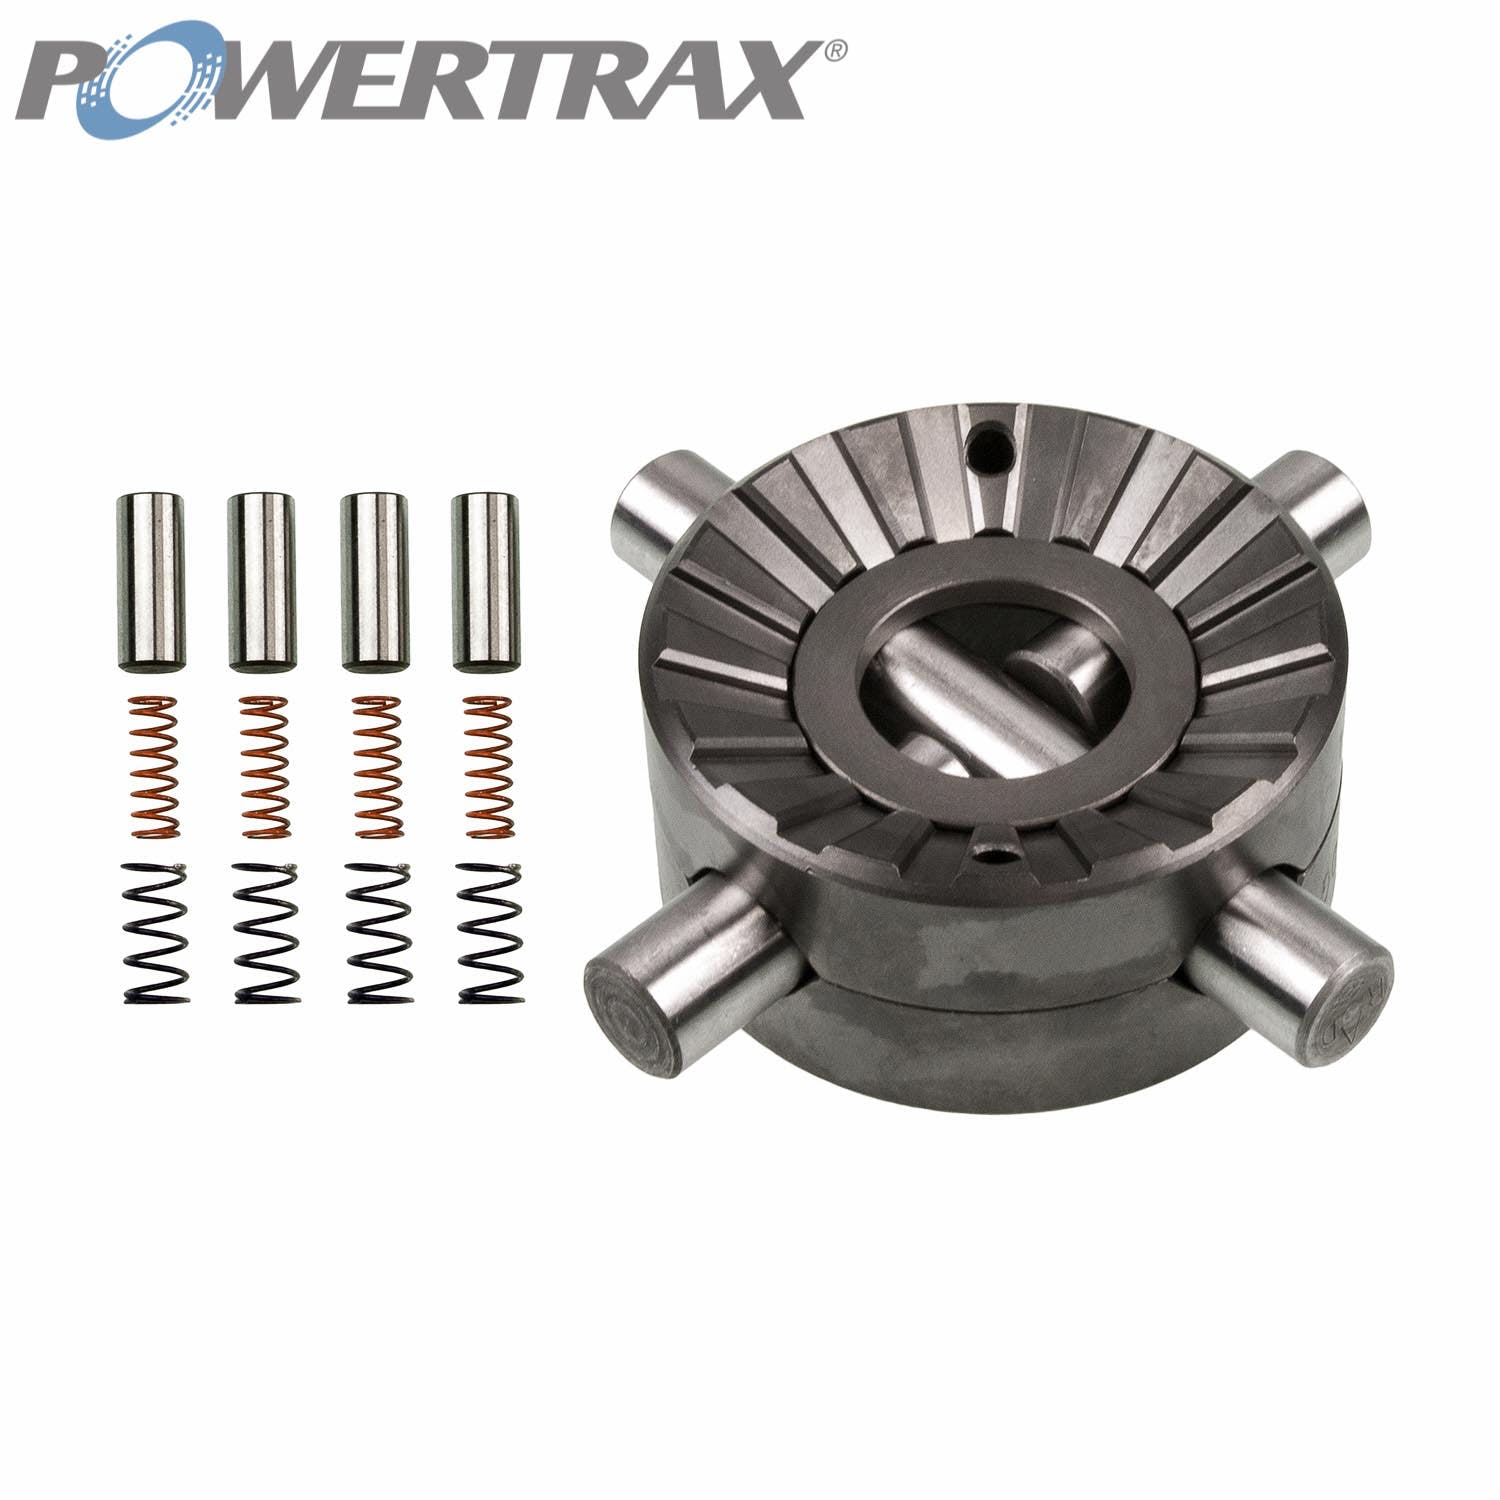 PowerTrax 1510-LR Lock Right Locker